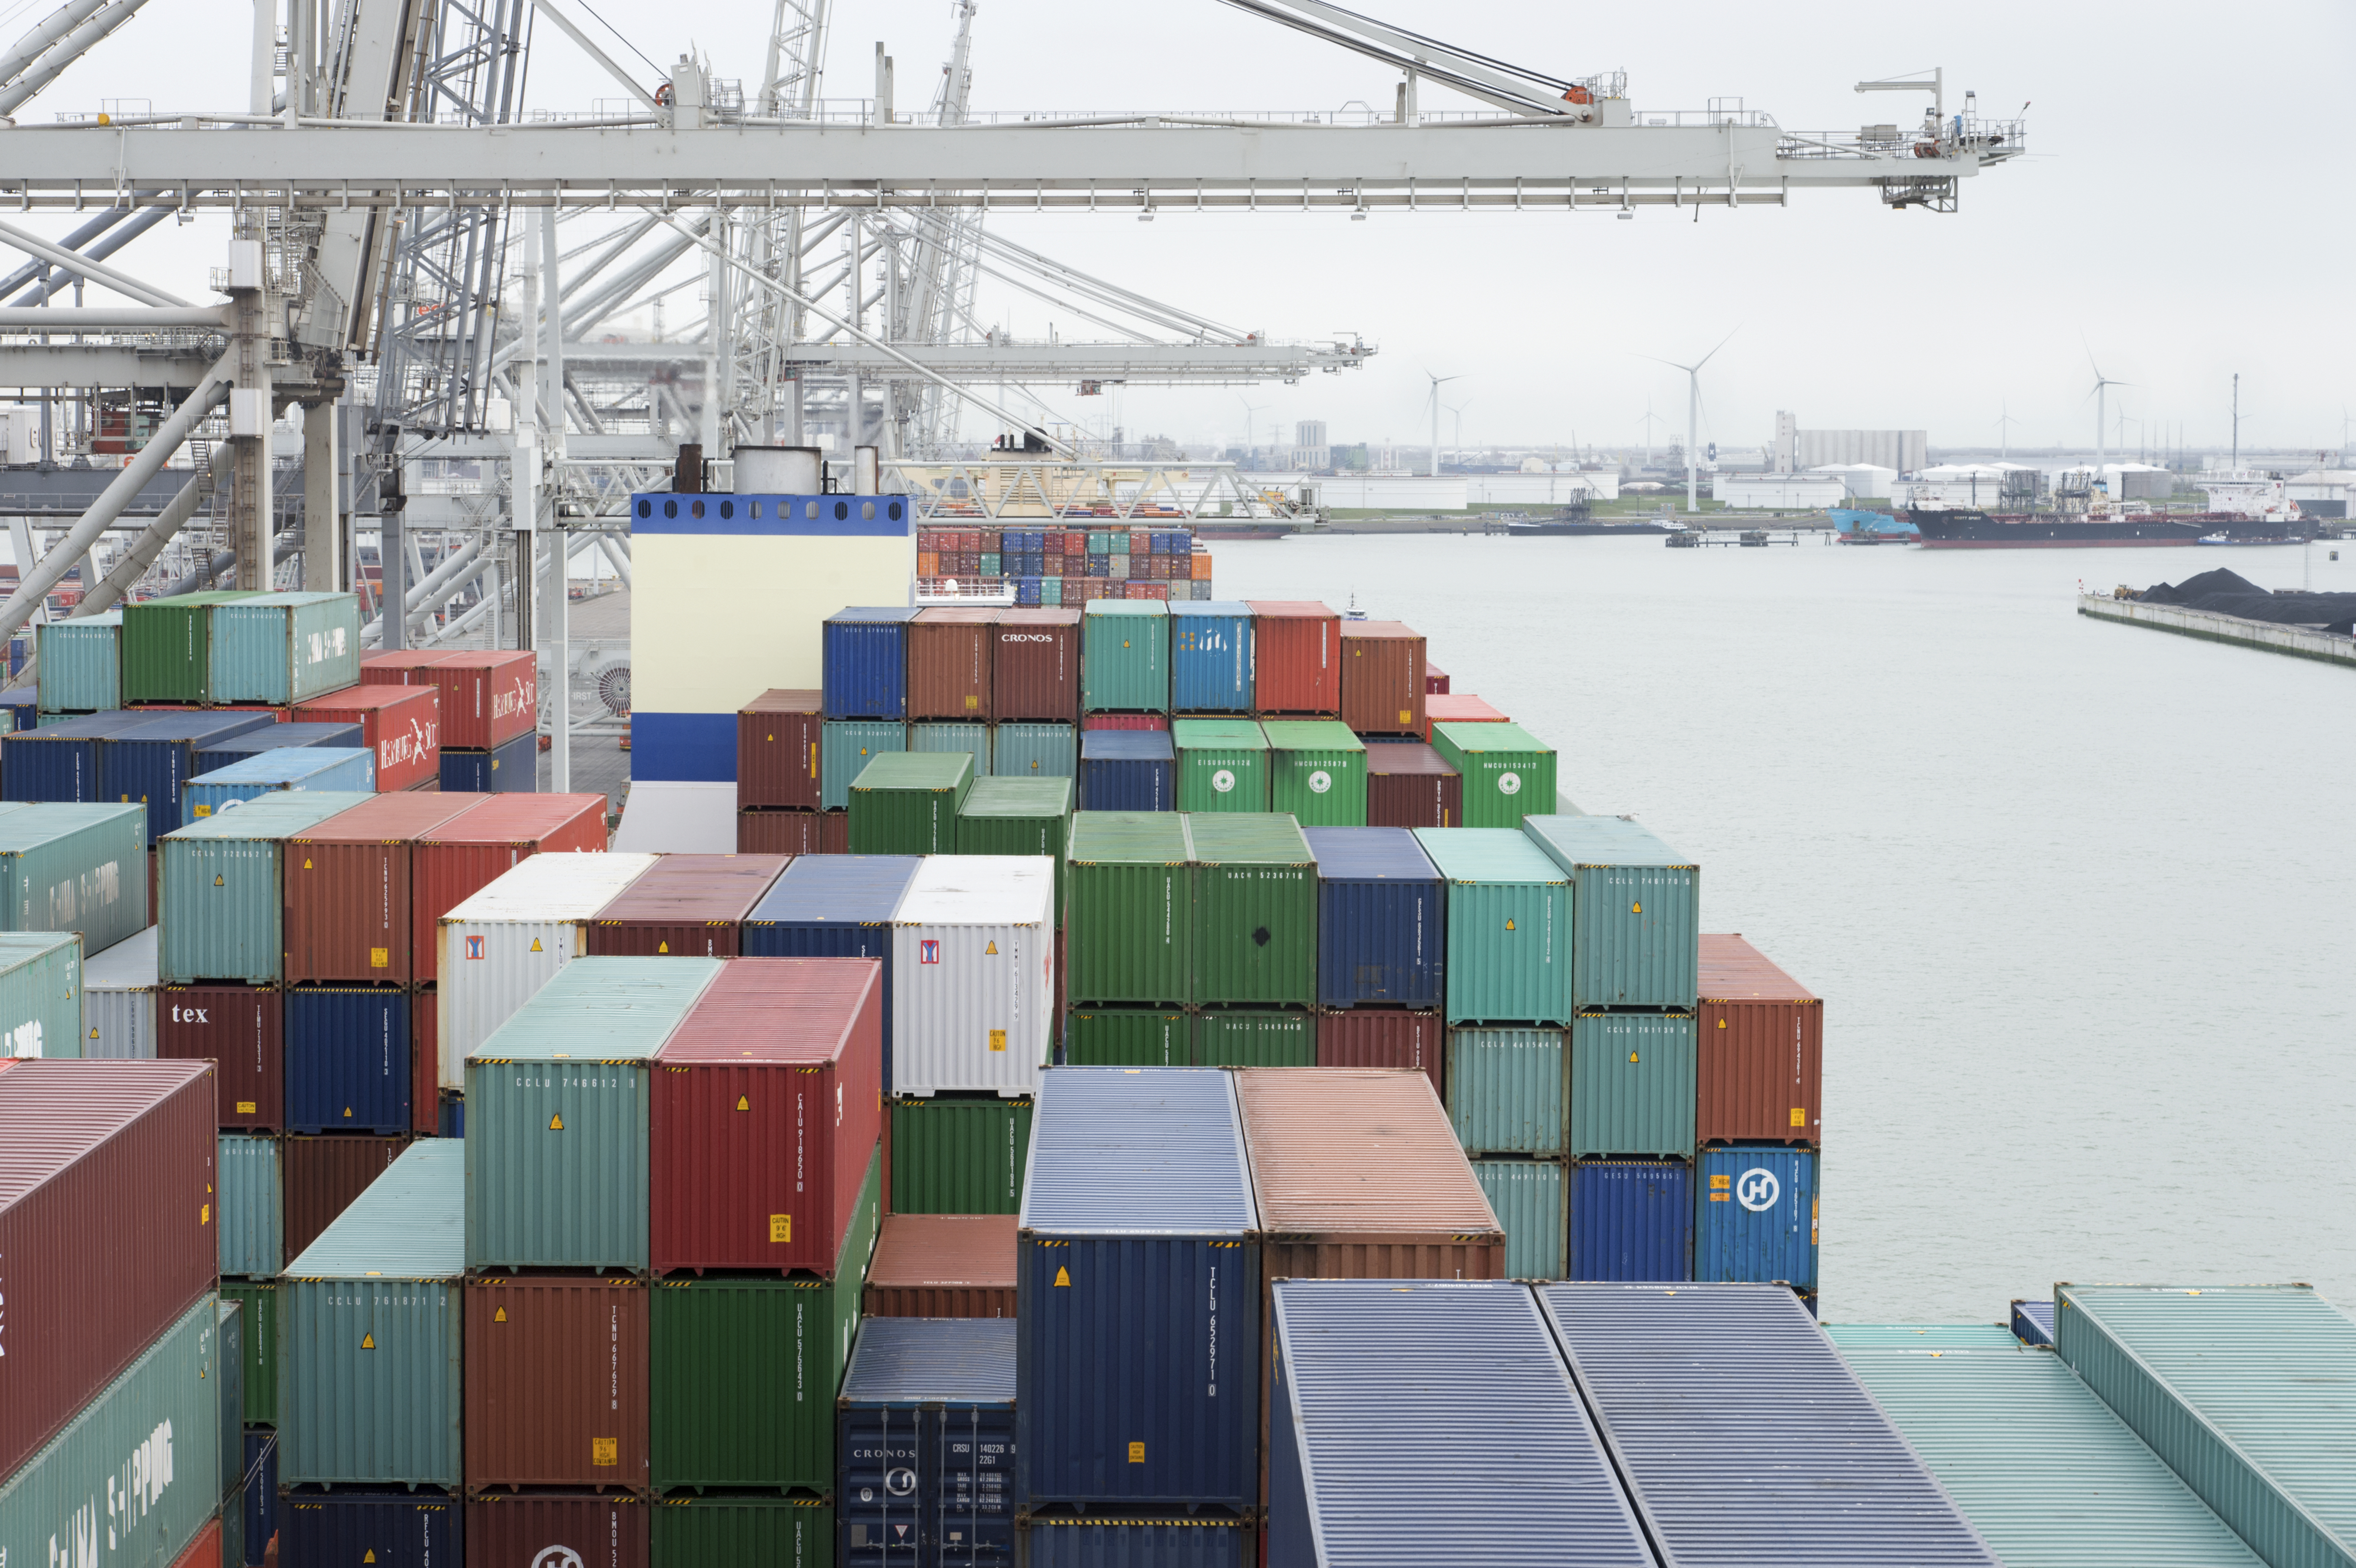 2016-01-31 10:04:35 ROTTERDAM - Vrachtcontainers worden gelost van de 'CSCL Saturn' van China Shipping, aan de kade van de Delta terminal van Europe Container Terminals (ECT), in de Rotterdamse haven. ANP XTRA VICTOR WOLLAERT